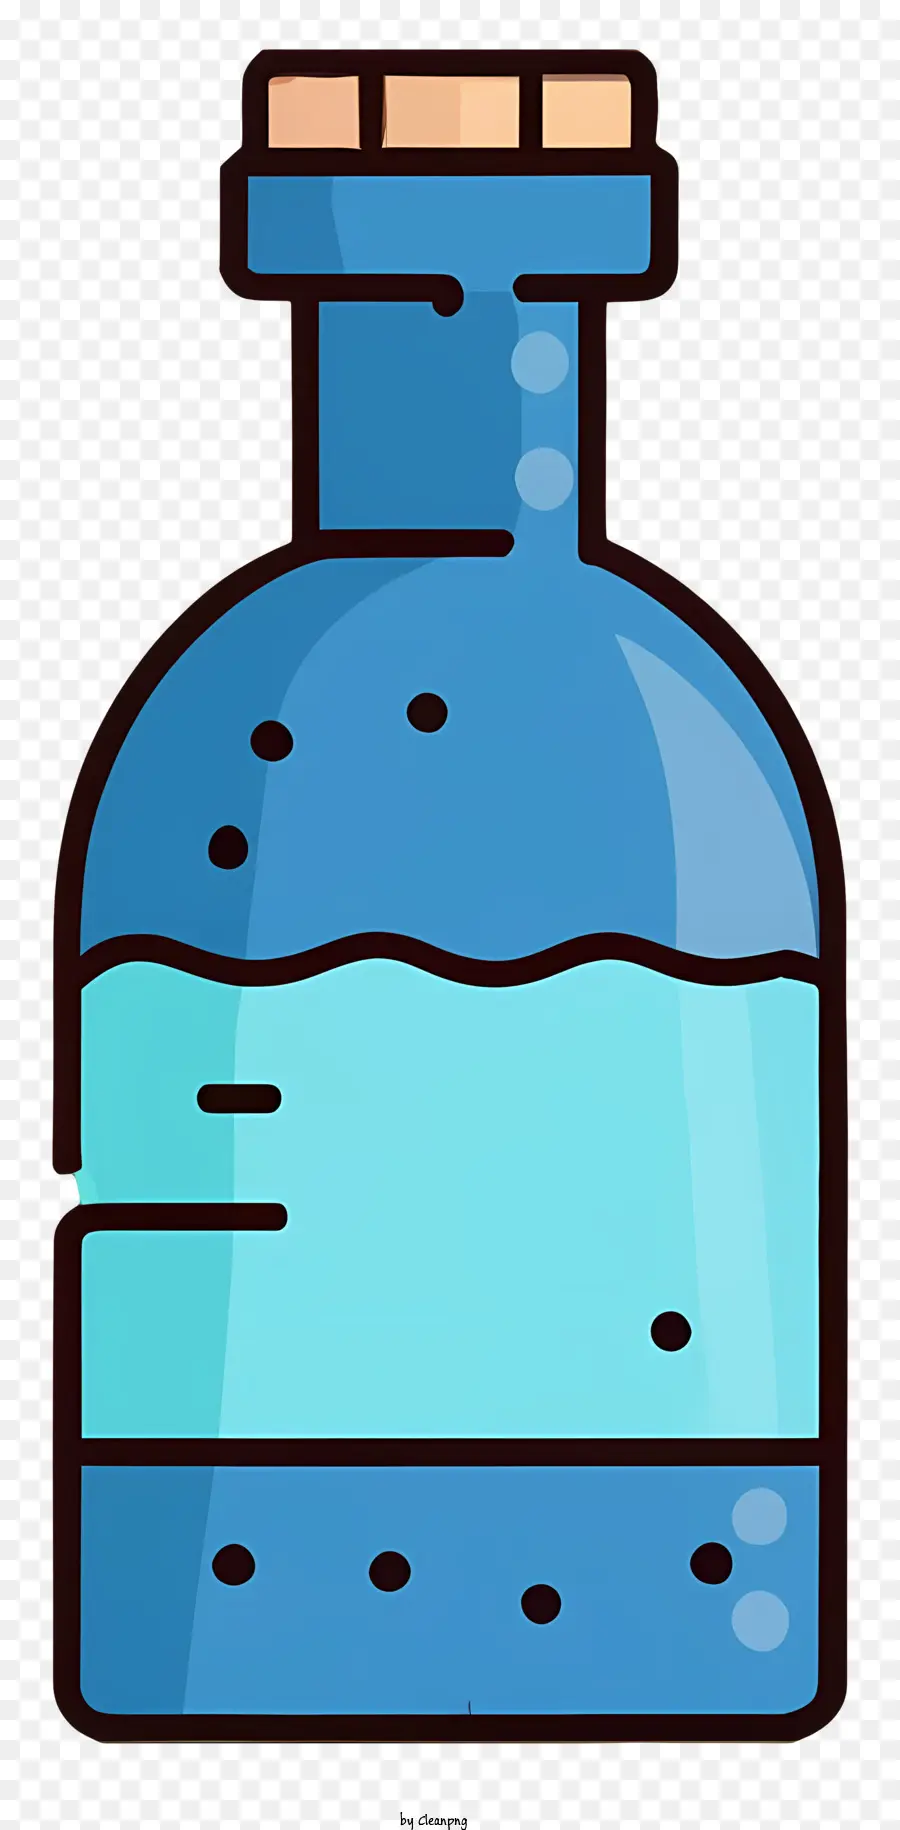 Cartoon Blue Glass Flasche Wasser gefüllt mit Flasche Cork Stopper Flat-Bottomed Flasche - Blaue Glasflasche mit Wasser, Korkenstopper